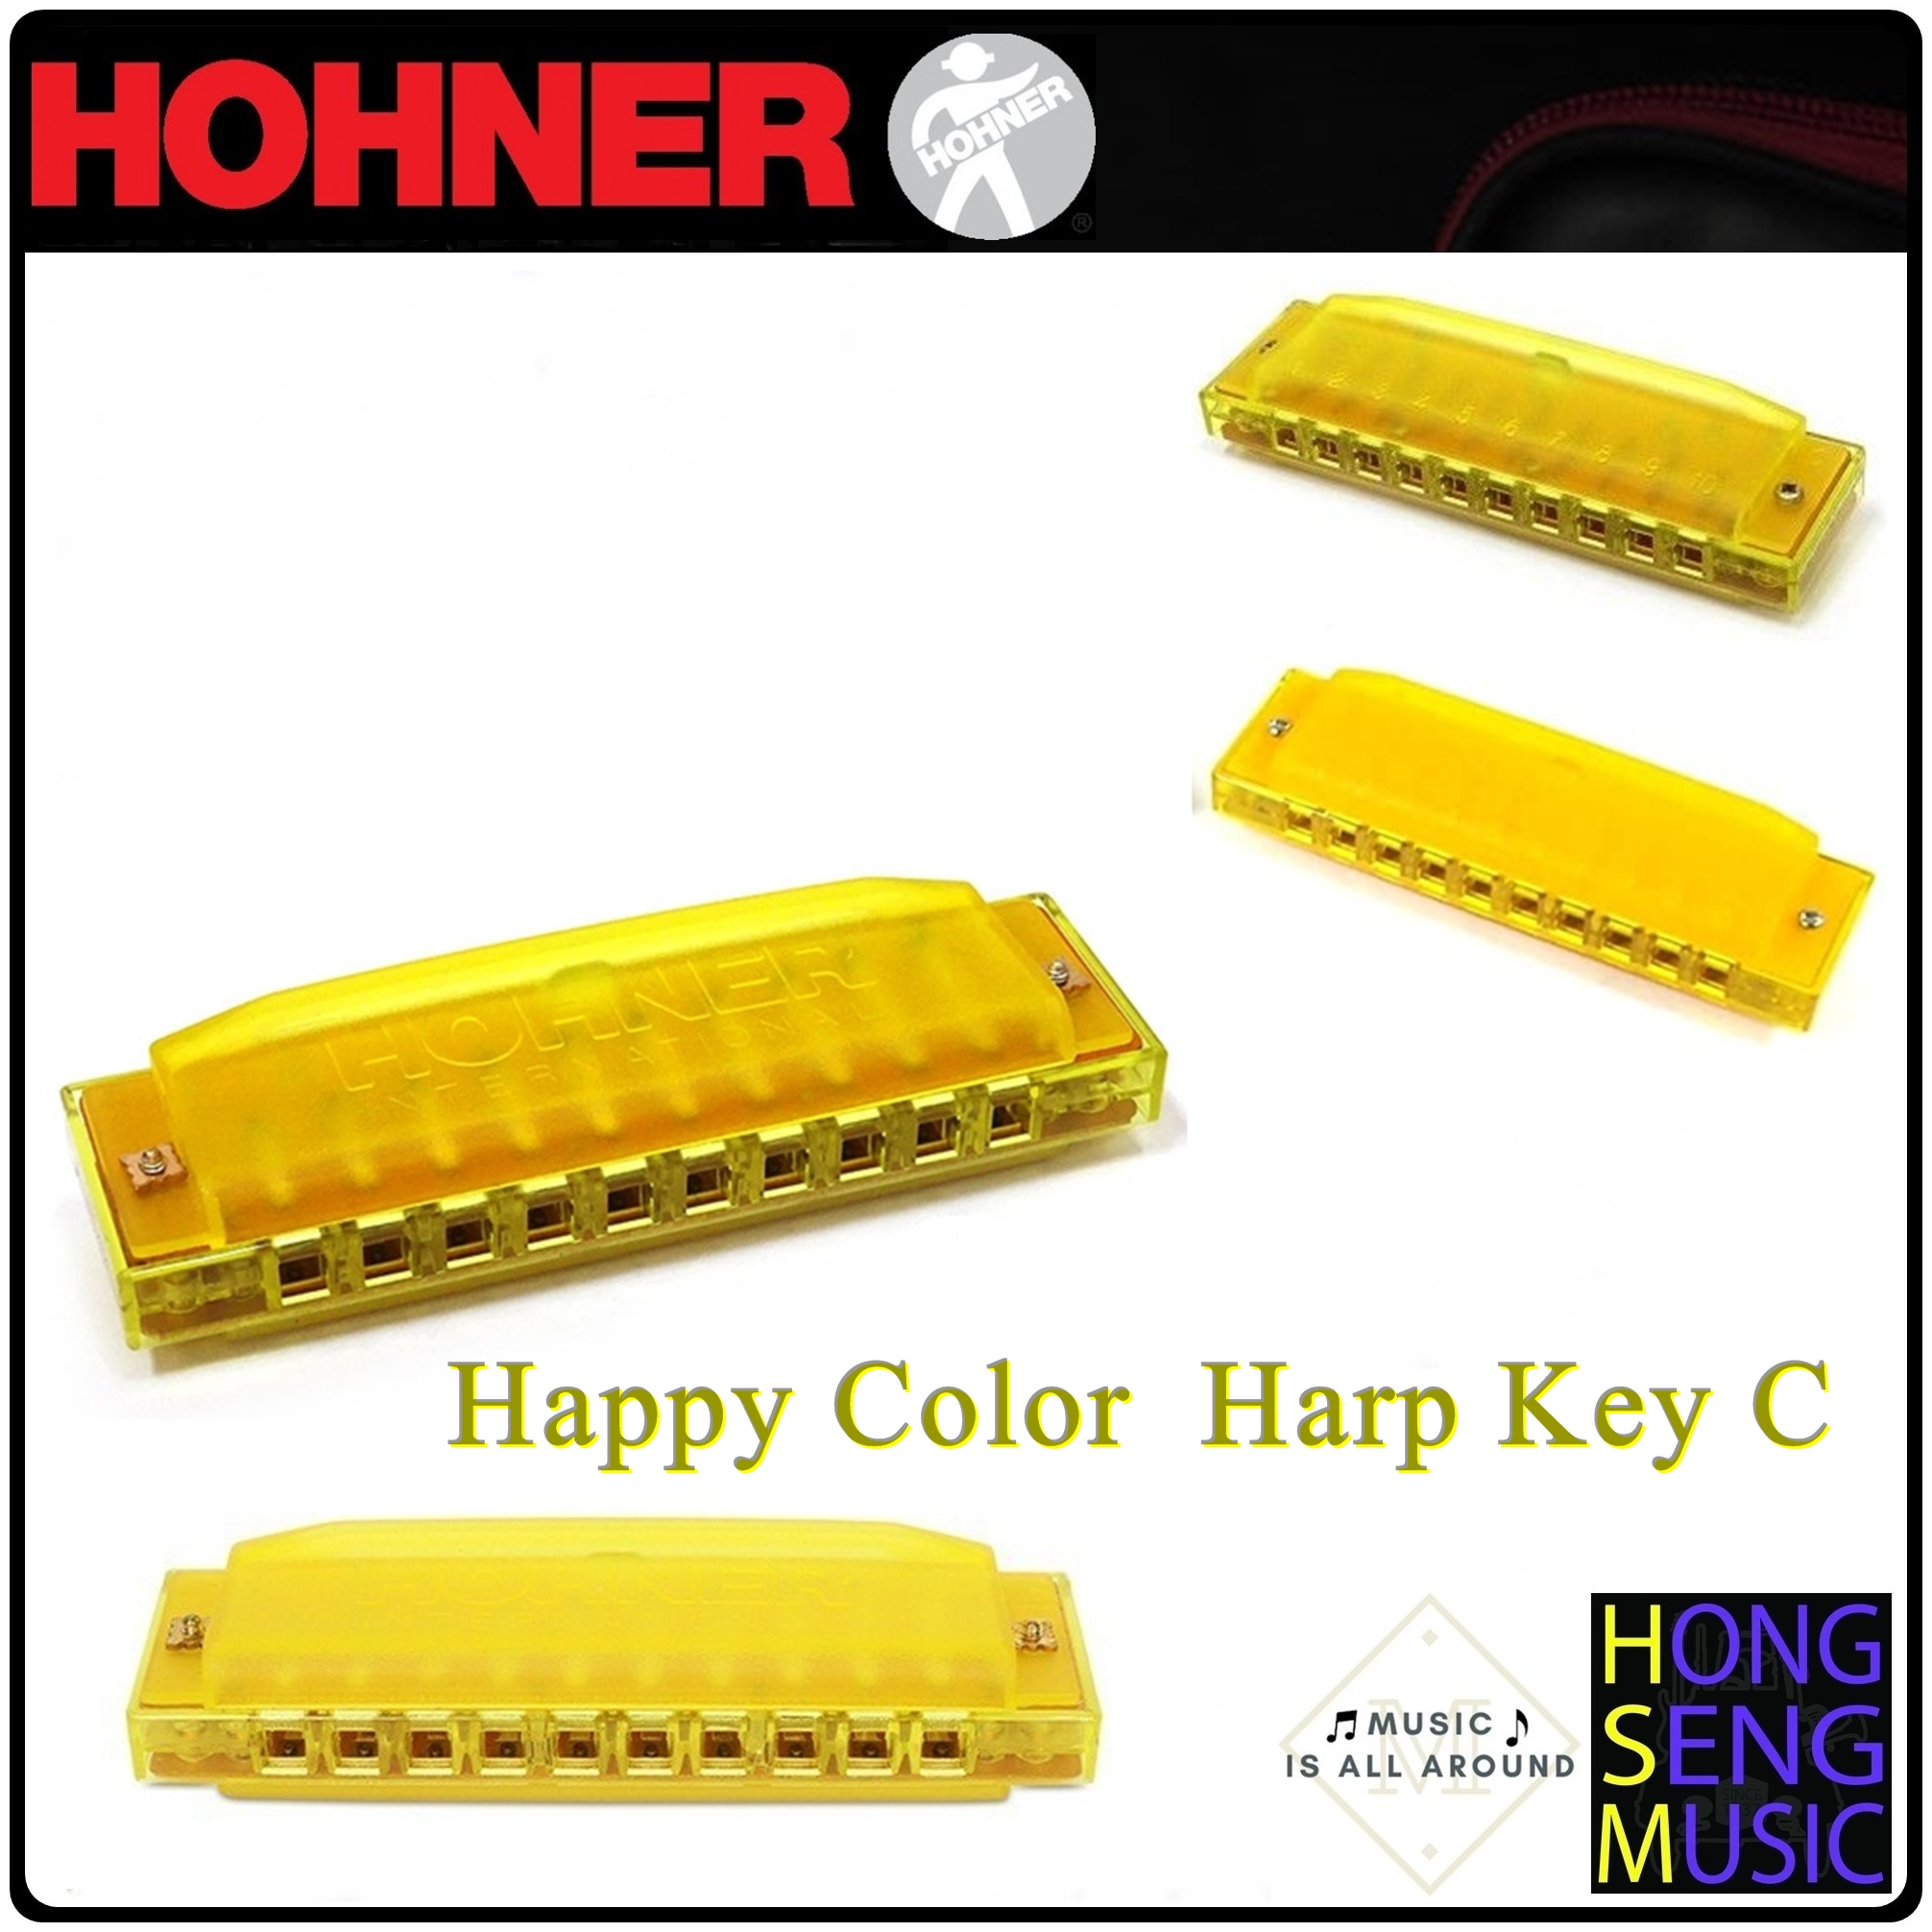 ฮาร์โมนิก้า (เม้าท์ออร์แกน) Hohner รุ่น Happy Color Harp Key C สีเหลือง